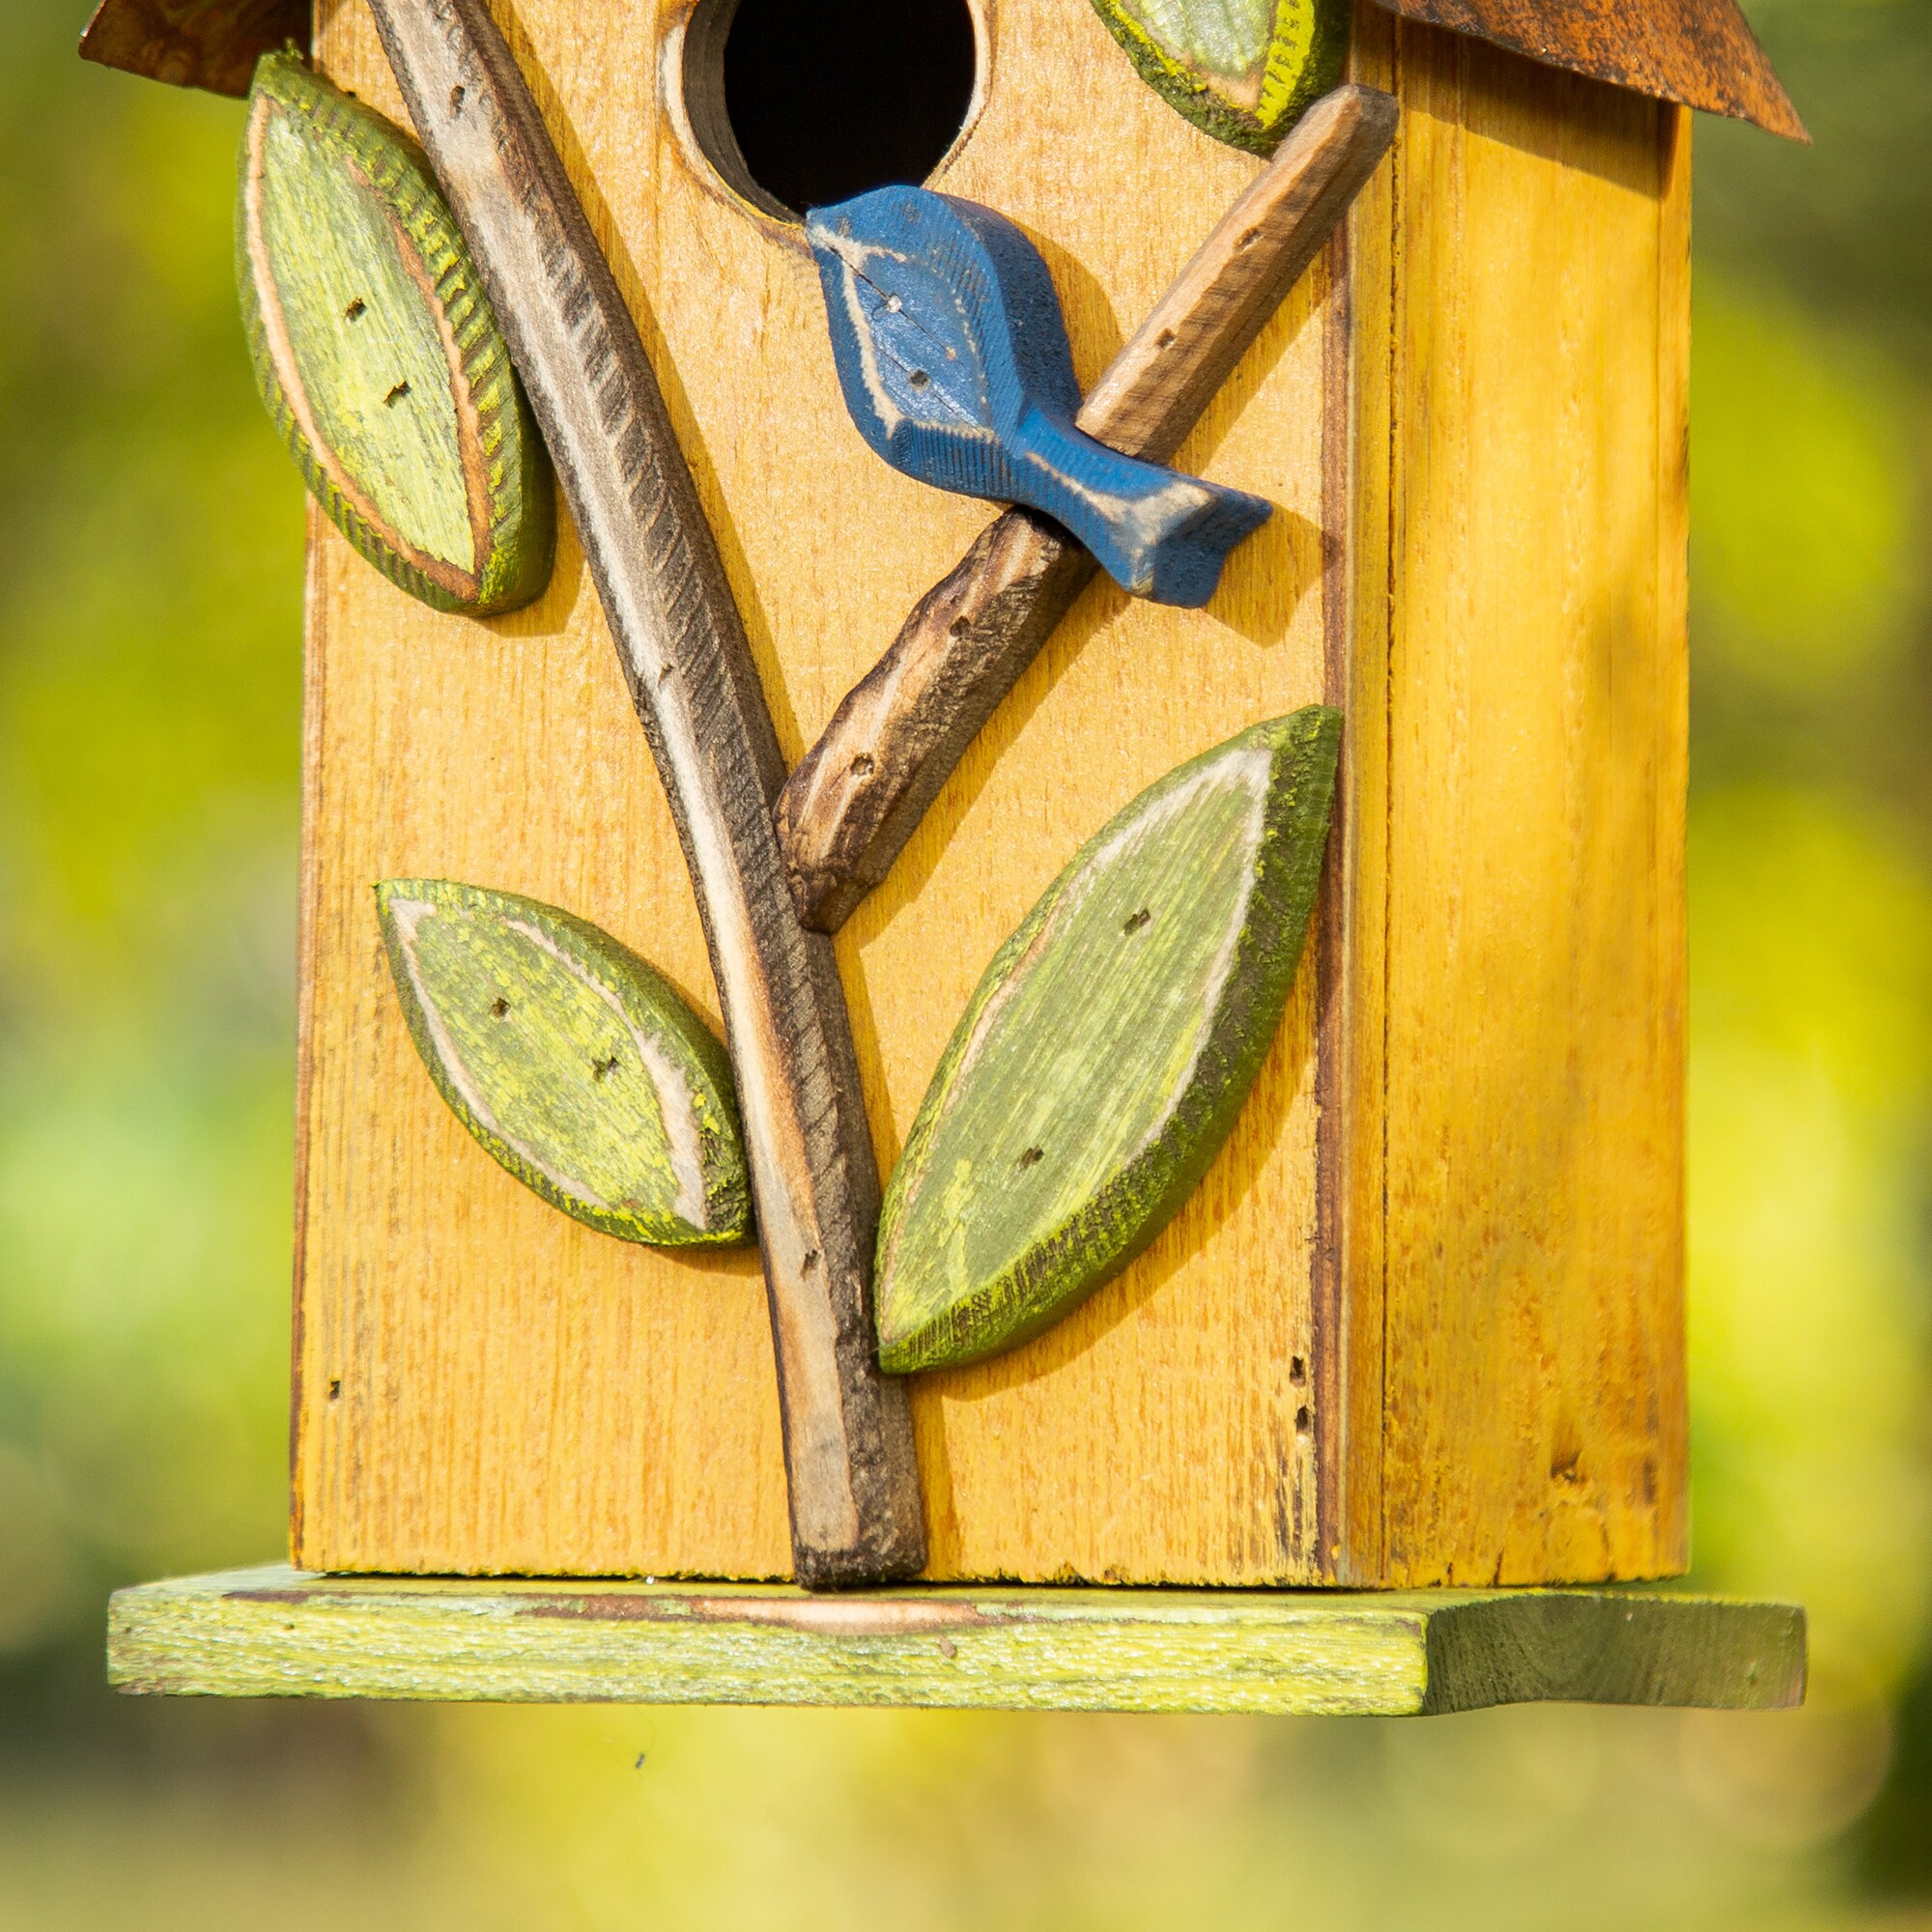 Bird House for Outside - Natural Bird House Handmade Wooden Bird